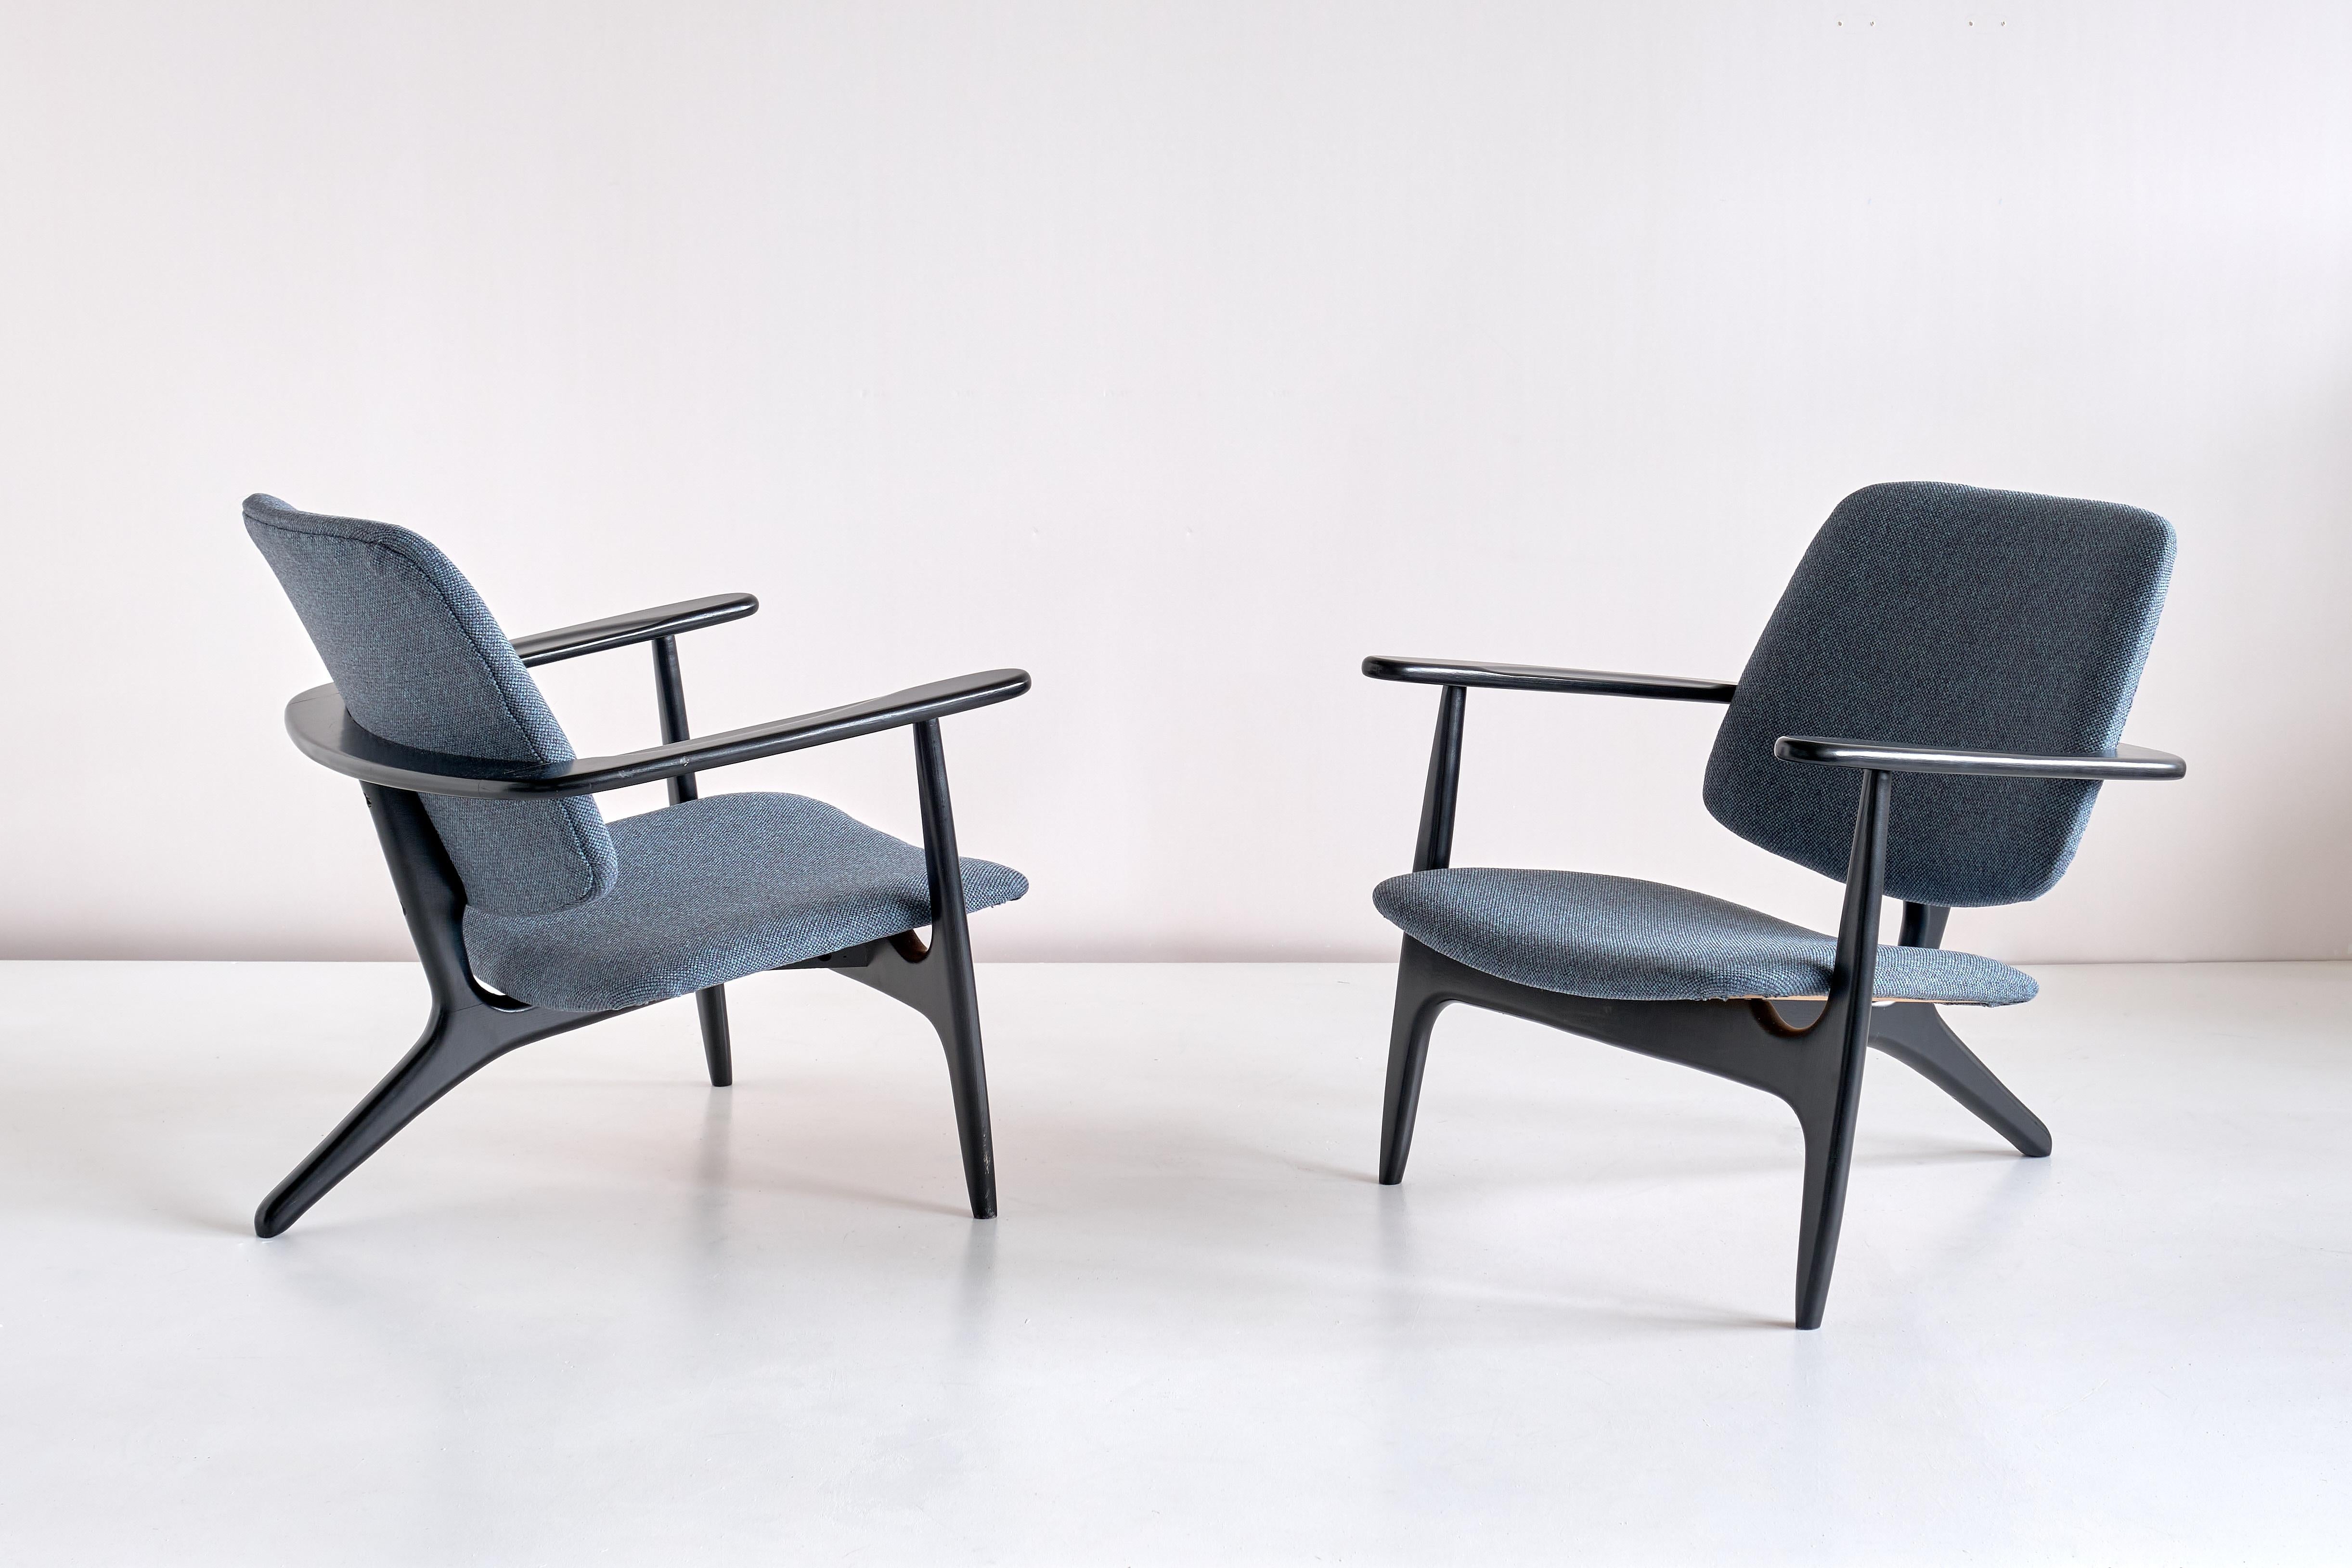 La silla S3 fue diseñada por Alfred Hendrickx y fabricada por Belform en Bélgica en 1958. Esta rara silla fue un diseño personalizado de Hendrickx para la sala VIP de primera clase de Sabena Airlines en el aeropuerto de Zaventem, Bruselas. El